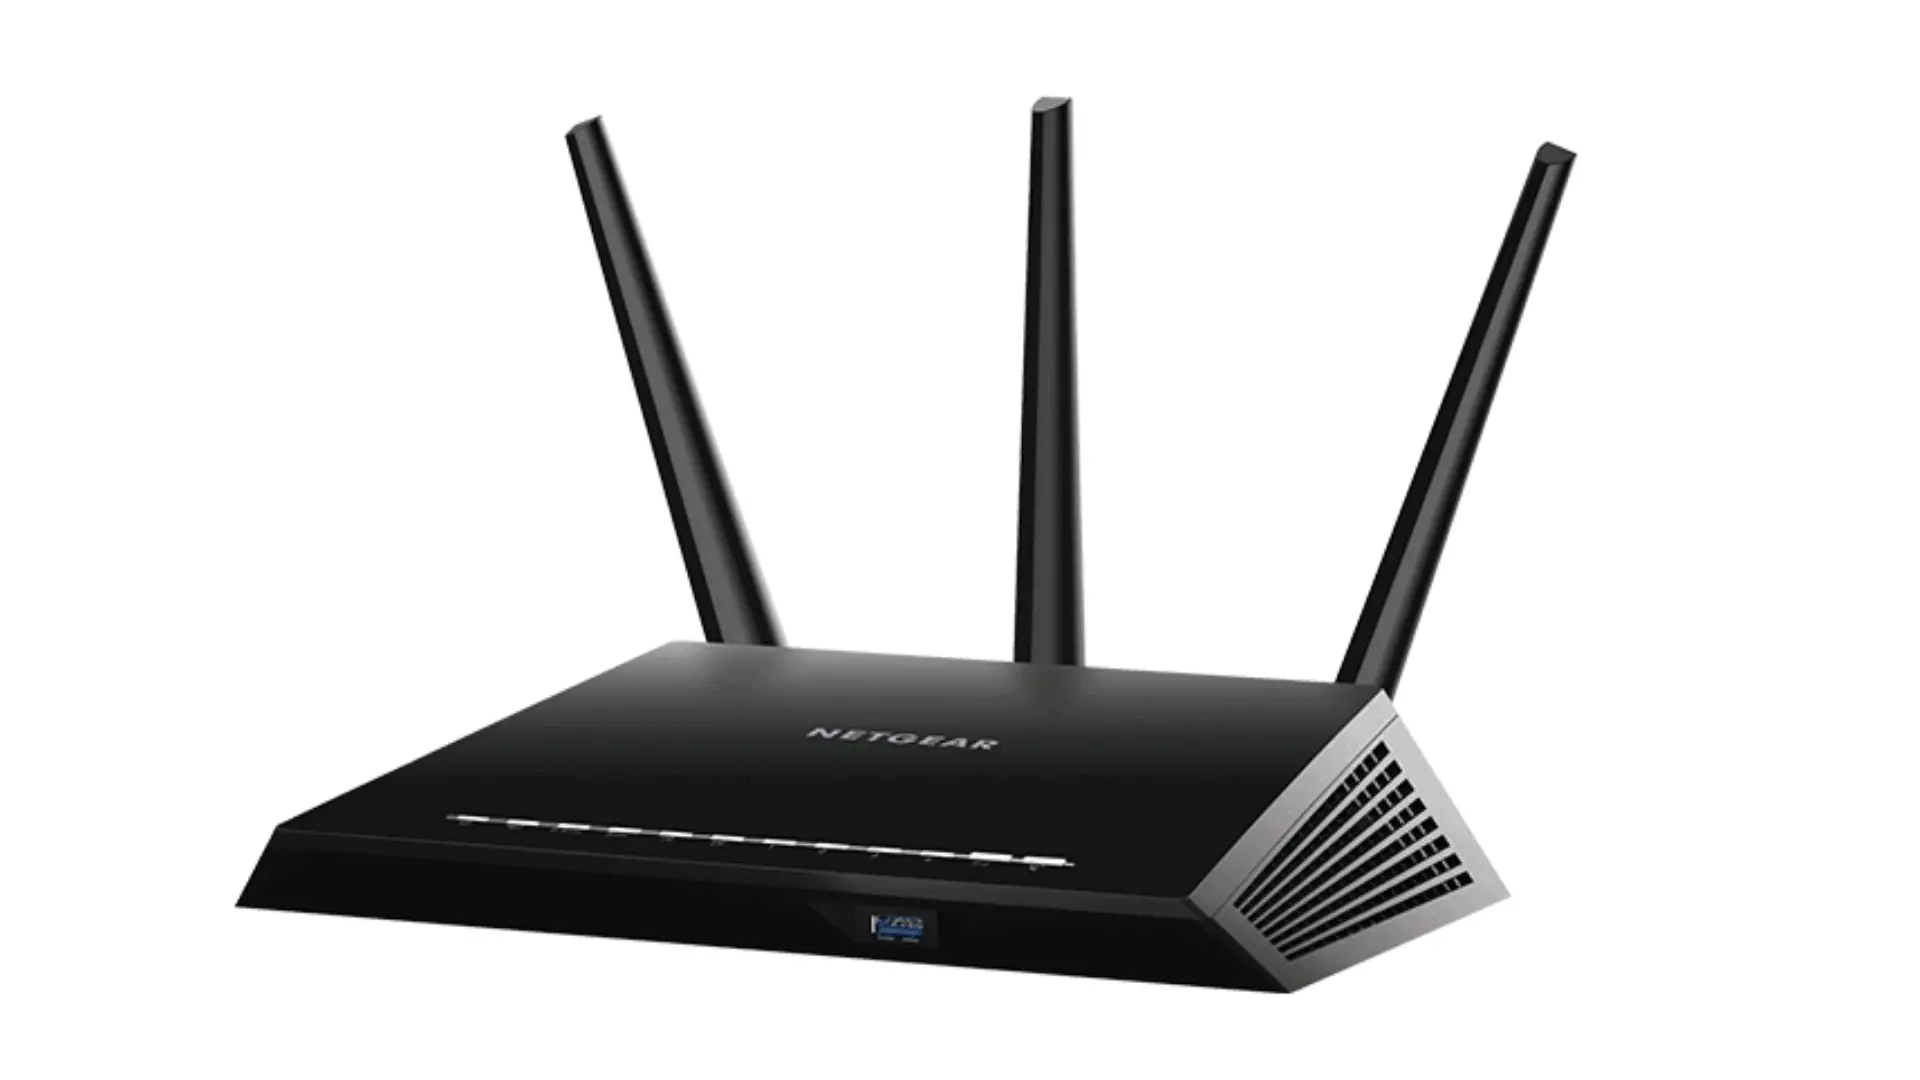  Netgear R6900 router in black